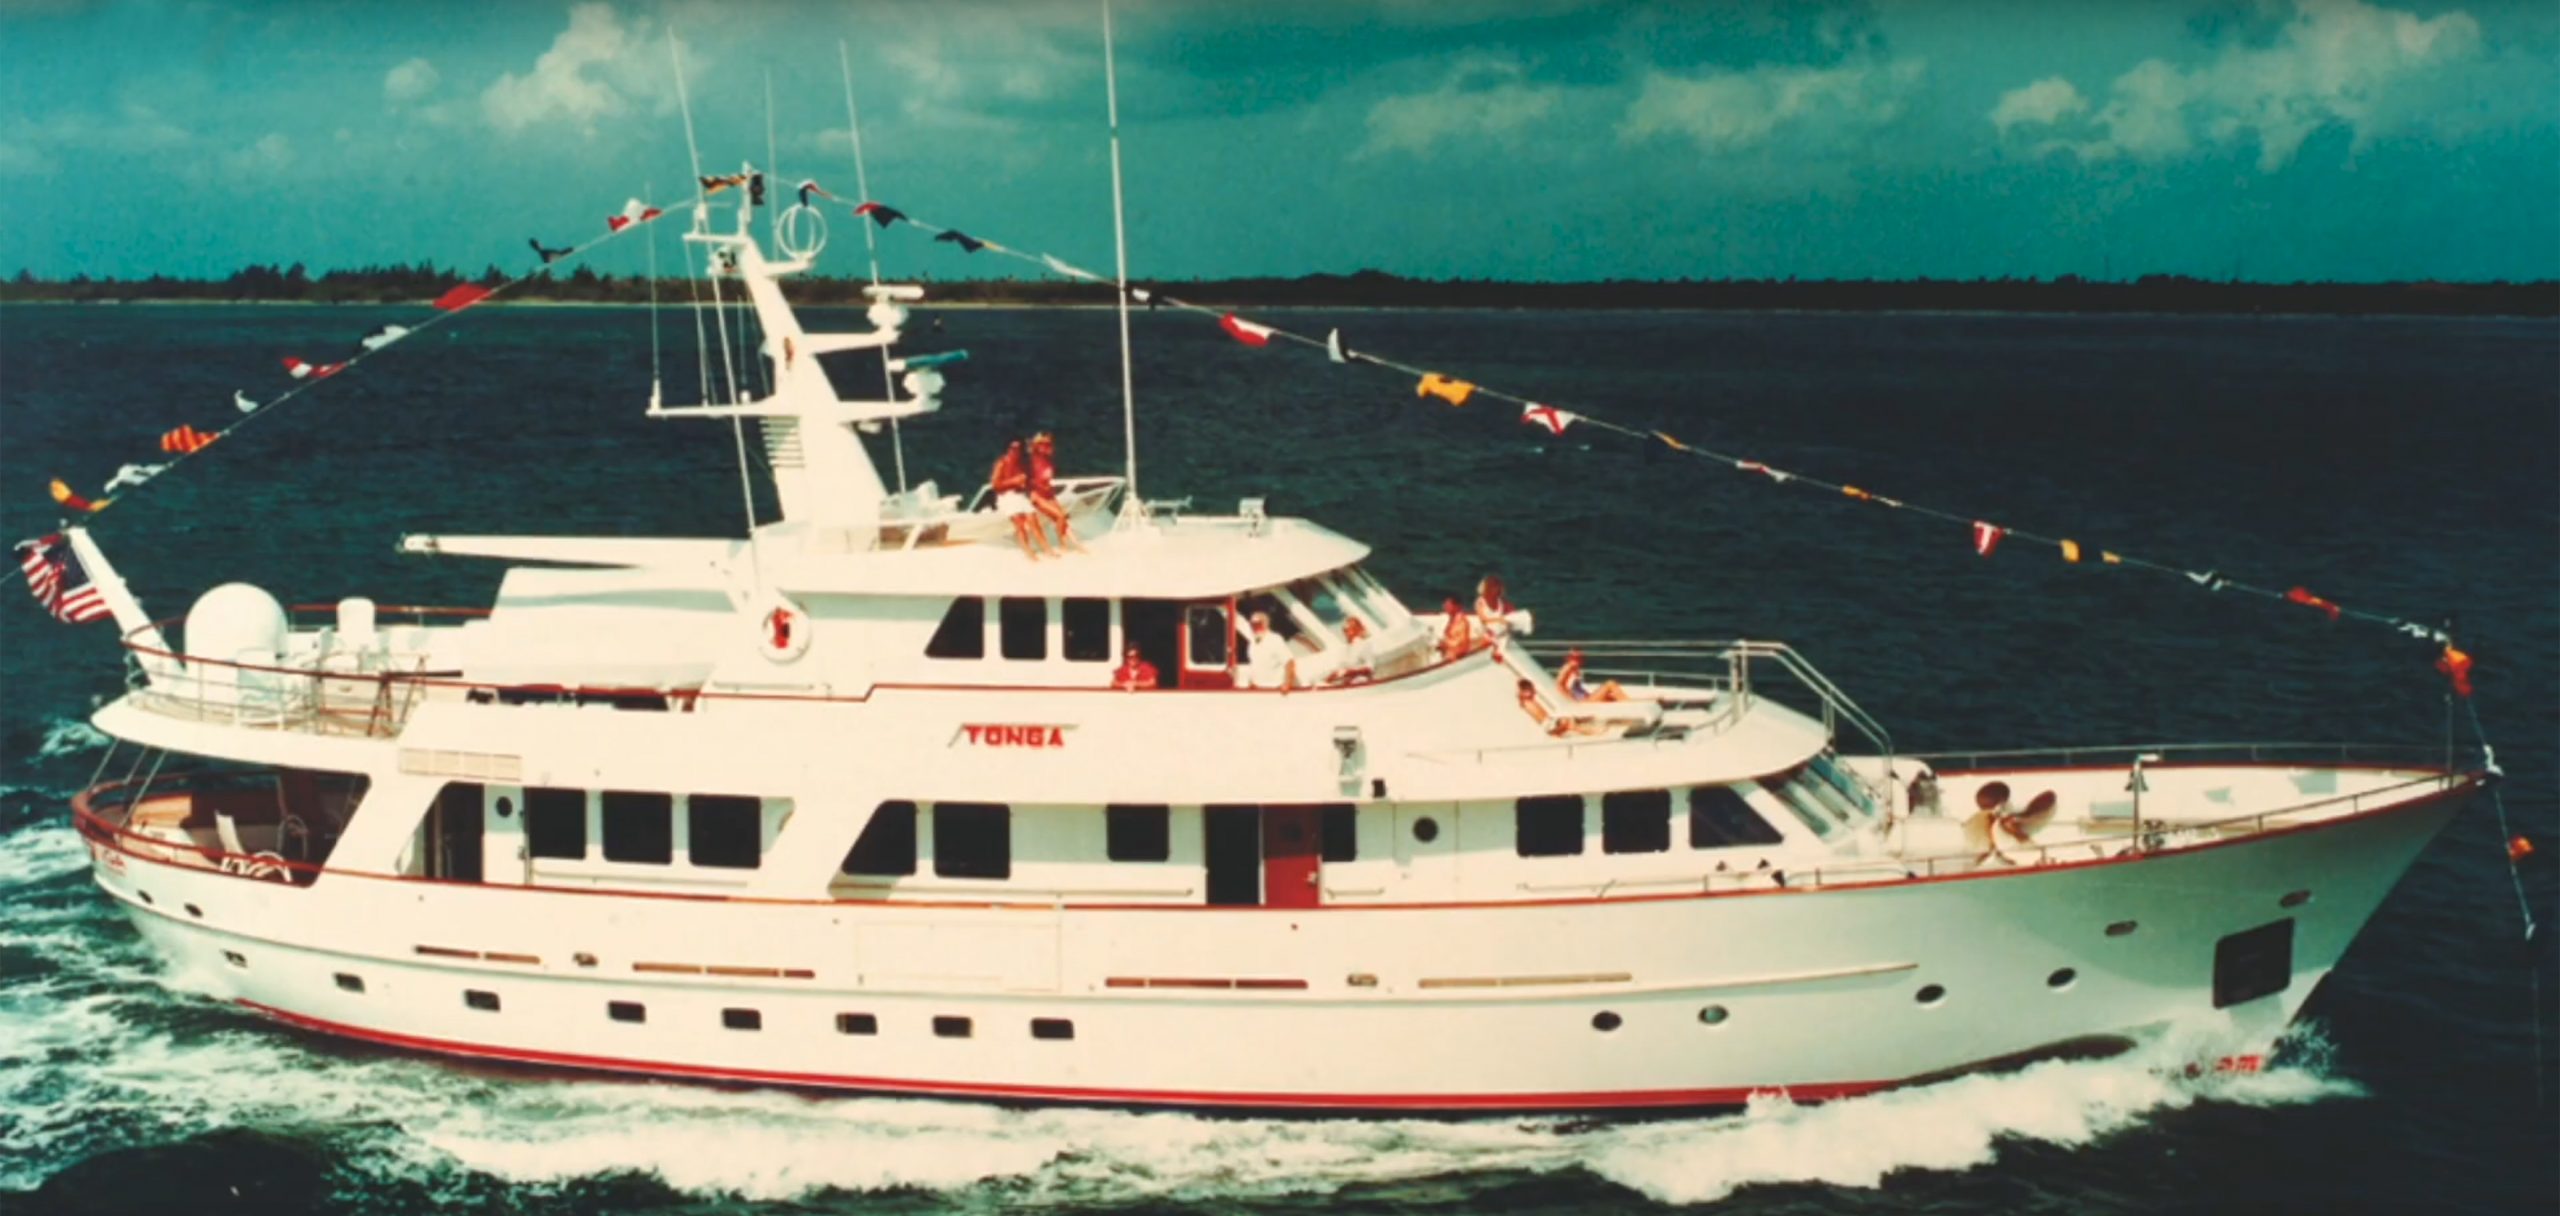 De Tonga was in 1985 het eerste superjacht van Hakvoort. (Foto Hakvoort Shipyard)